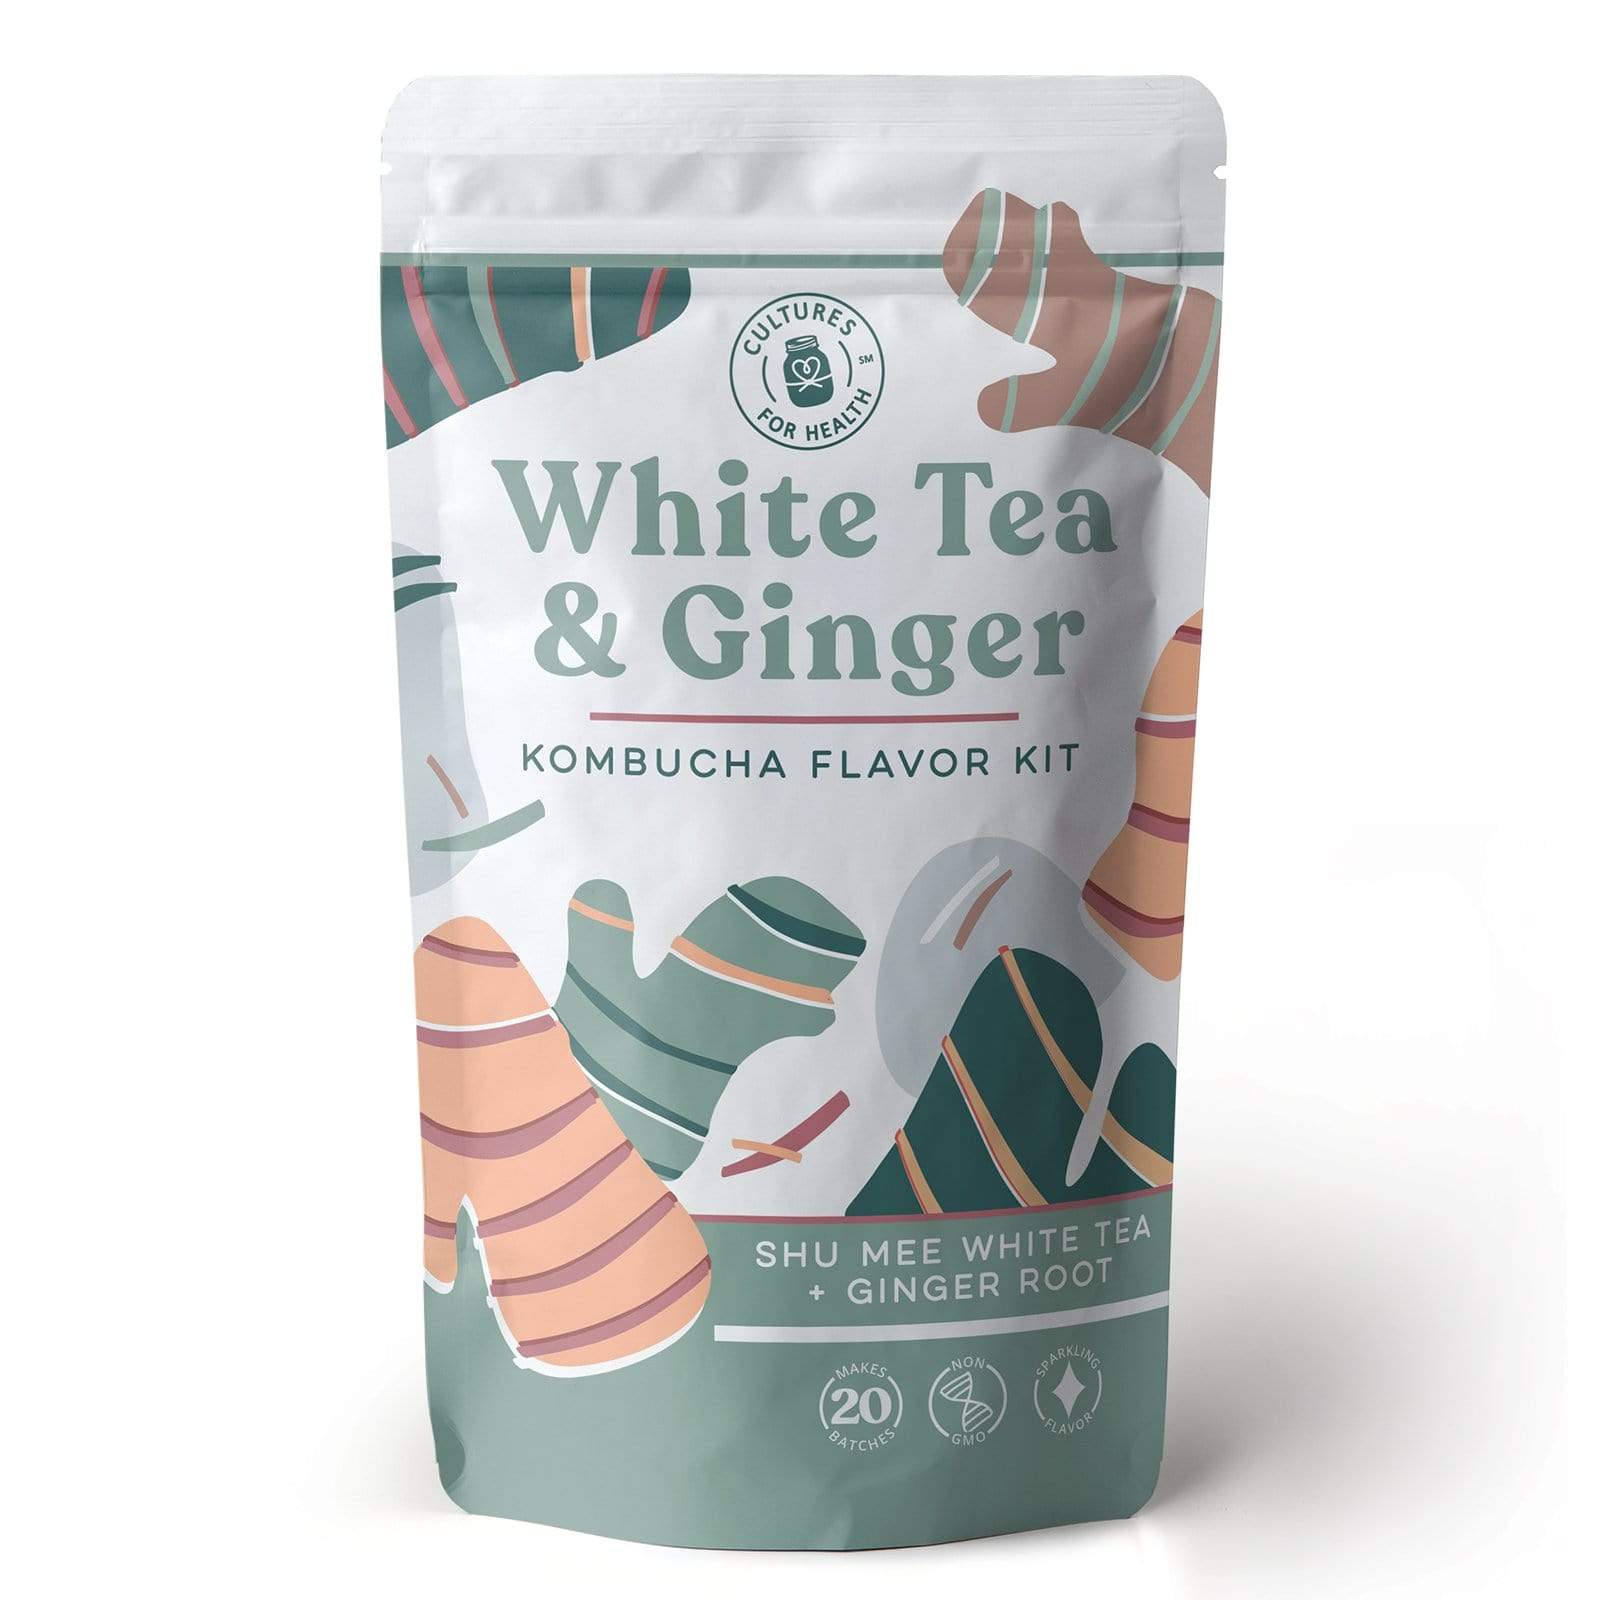 Kombucha White Tea & Ginger Kombucha Flavor Kit